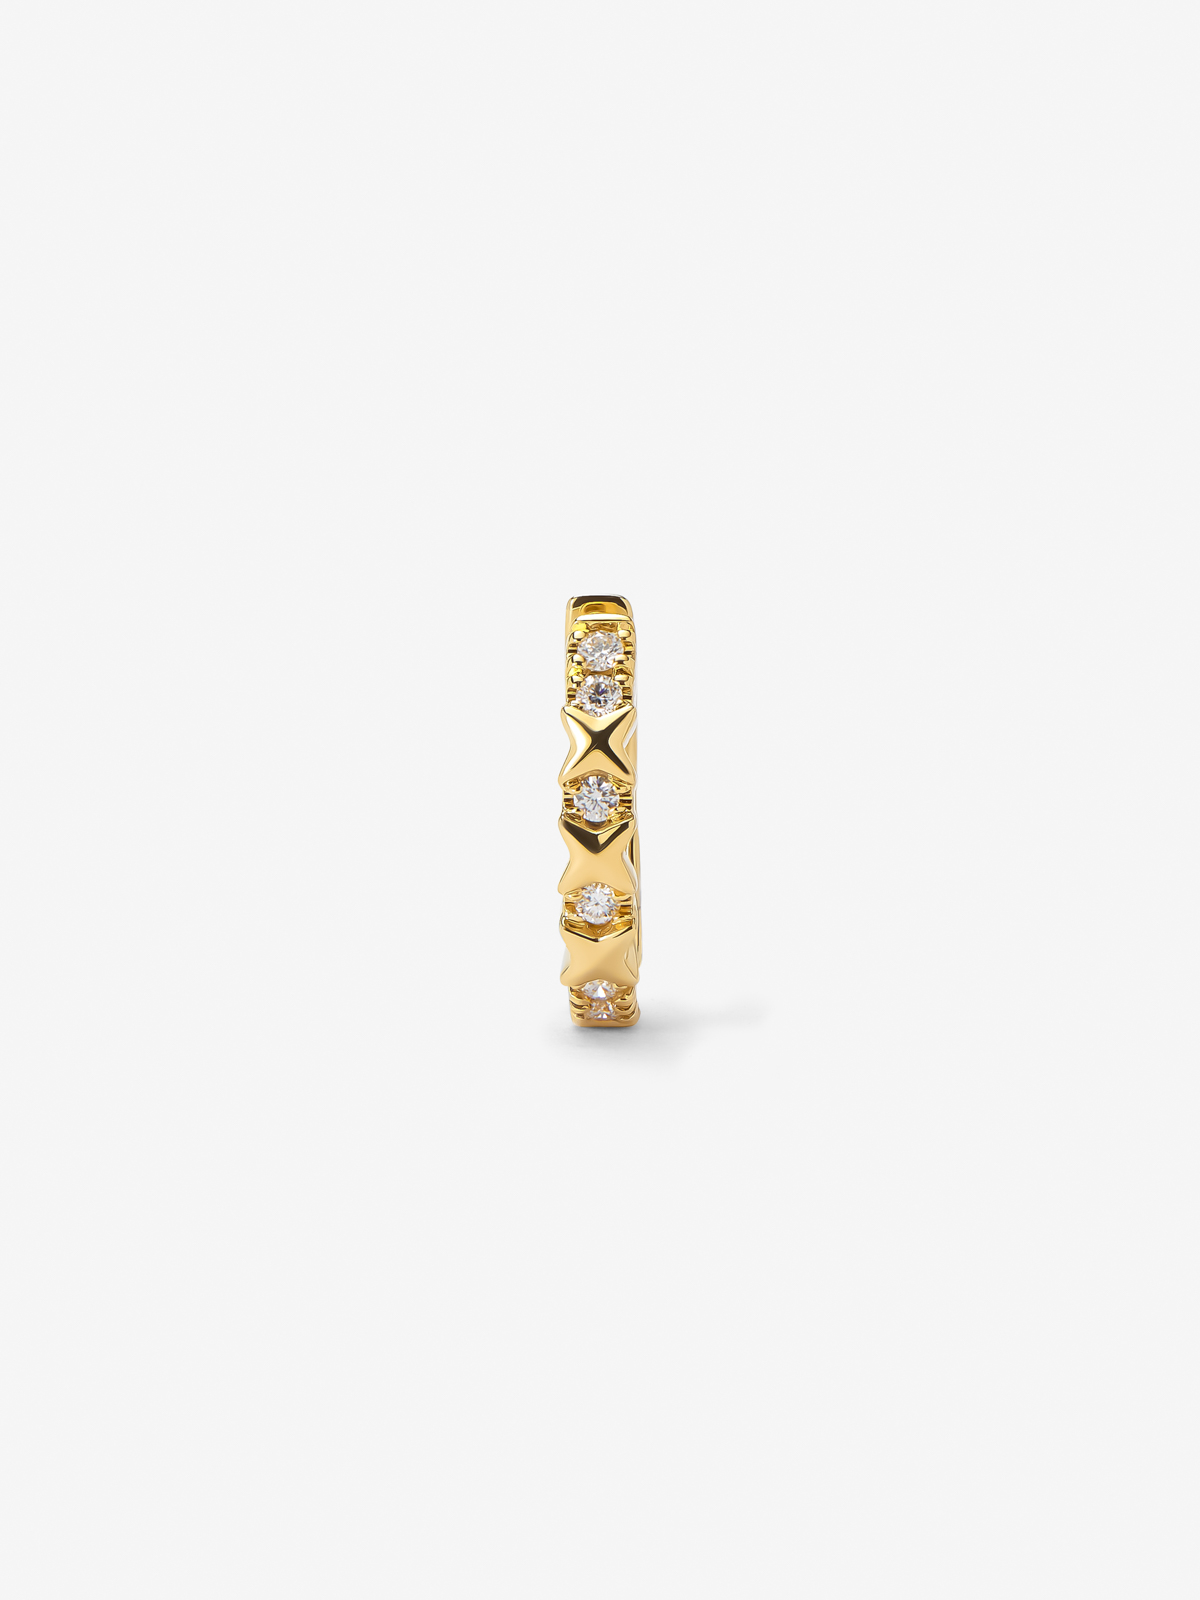 Pendiente individual de aro de oro amarillo de 18K con 6 diamantes en talla brillante con un total de 0,04 cts